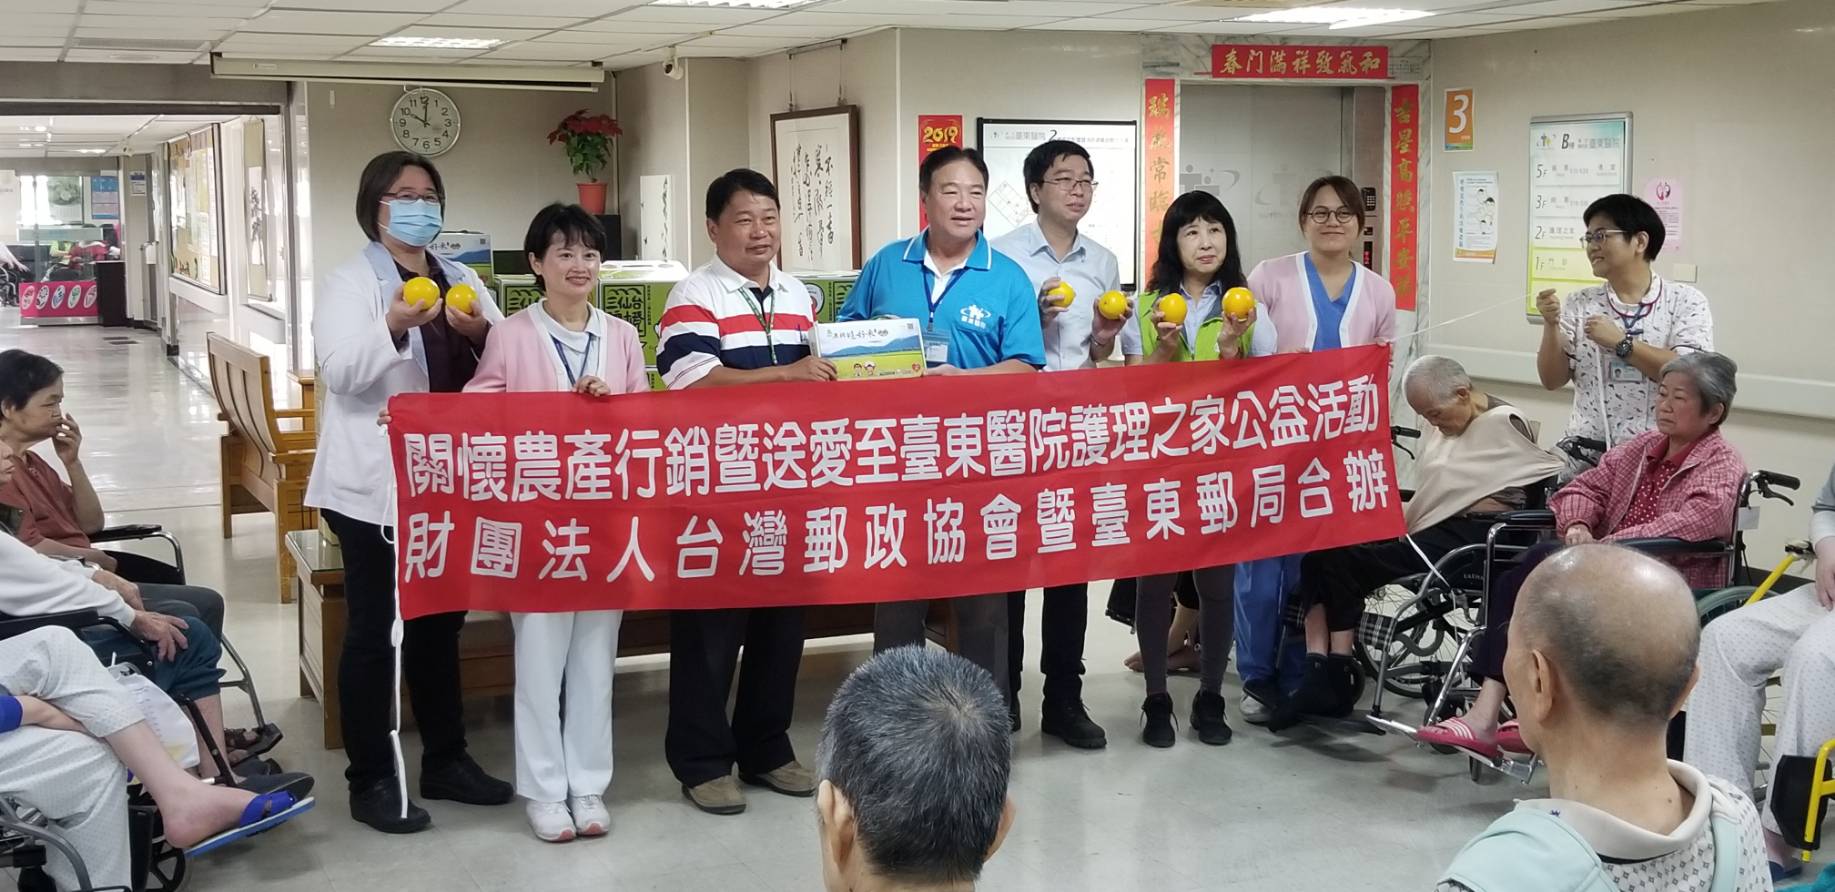 臺東郵局與台灣郵政協會共同舉辦「關懷農產行銷暨送愛至臺東醫院護理之家」公益活動